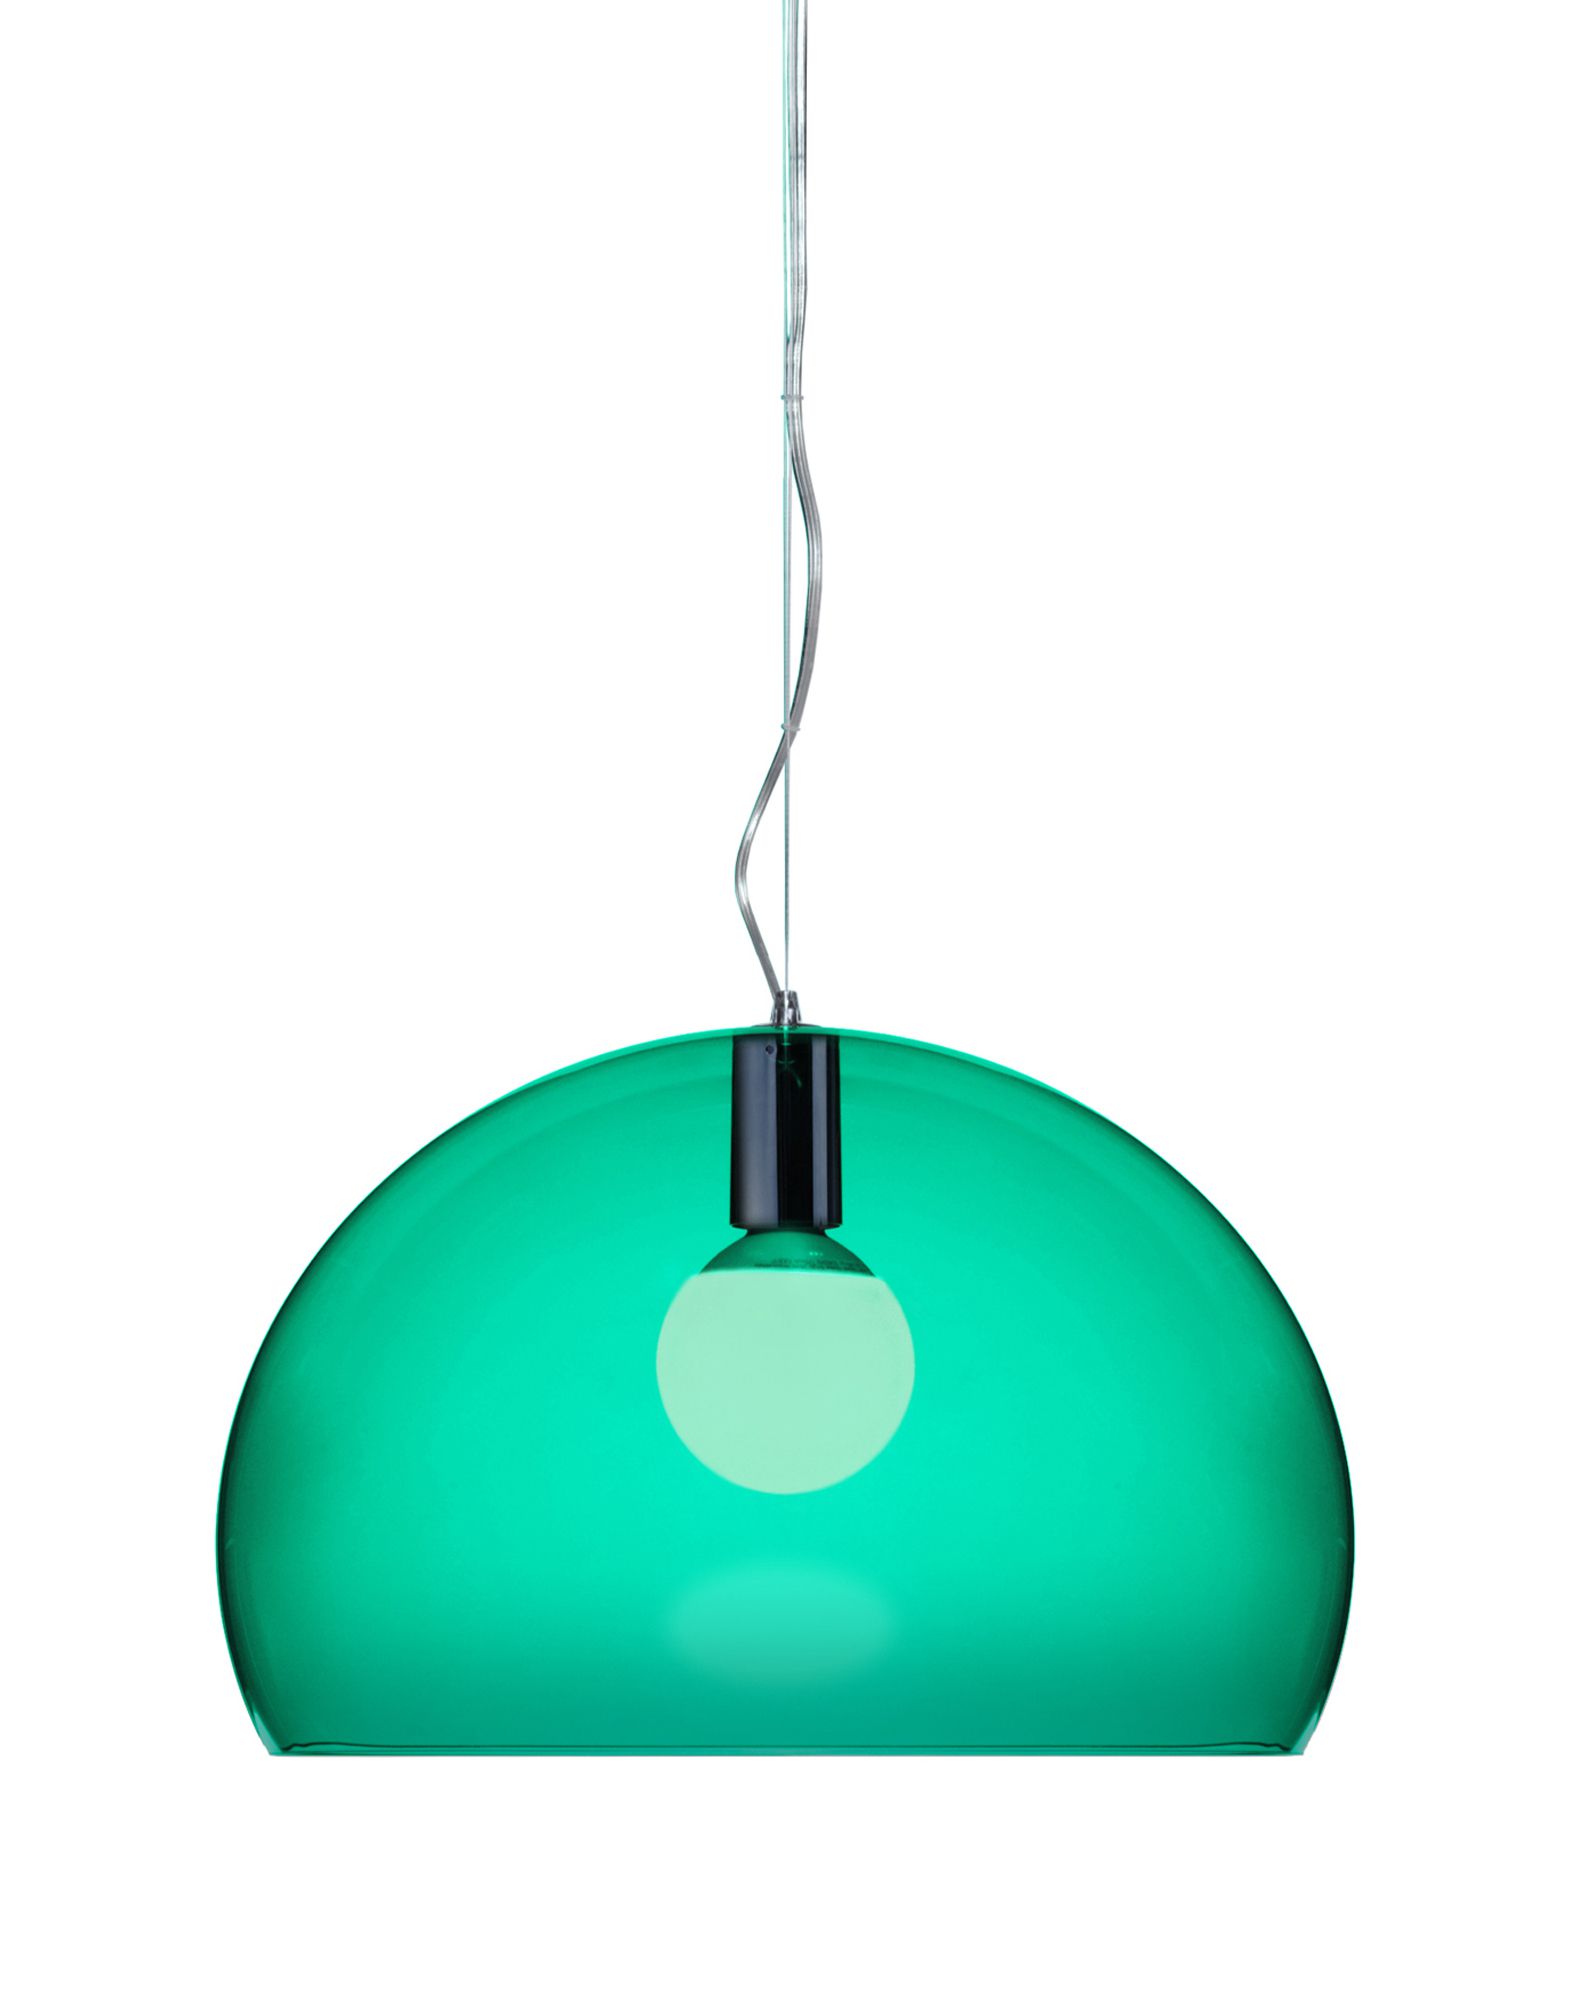 Suspensie Kartell FL/Y design Ferruccio Laviani E27 max 15W LED h33cm verde smarald transparent Kartell pret redus imagine 2022